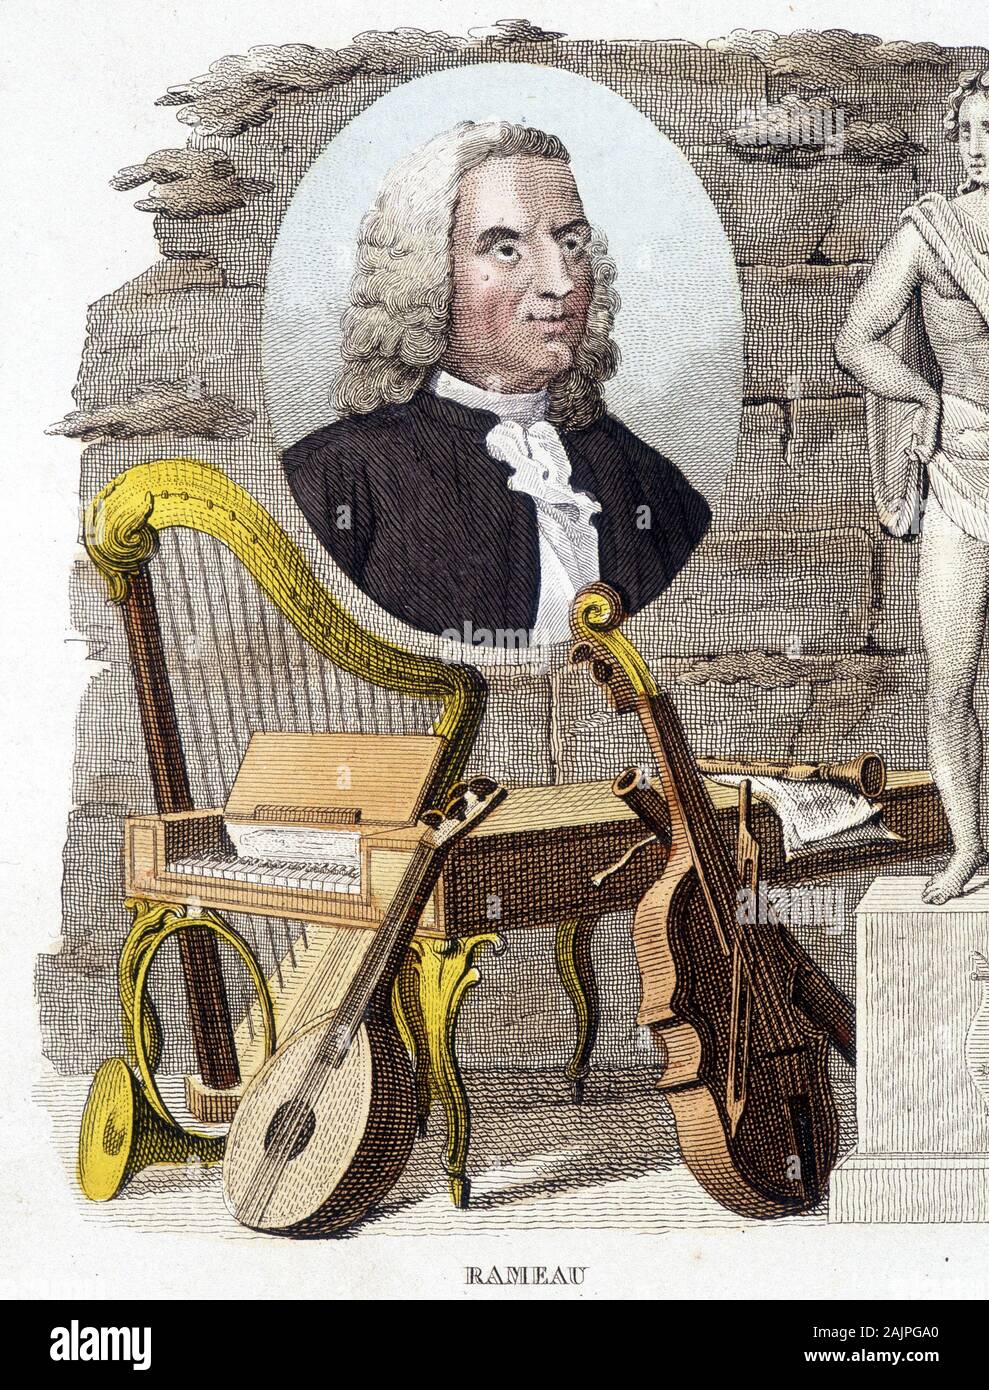 Jean Philippe (Jean-Philippe) Rameau, compositeur francais (1683-1764) - gravure, deb. XXeme siecle Stock Photo